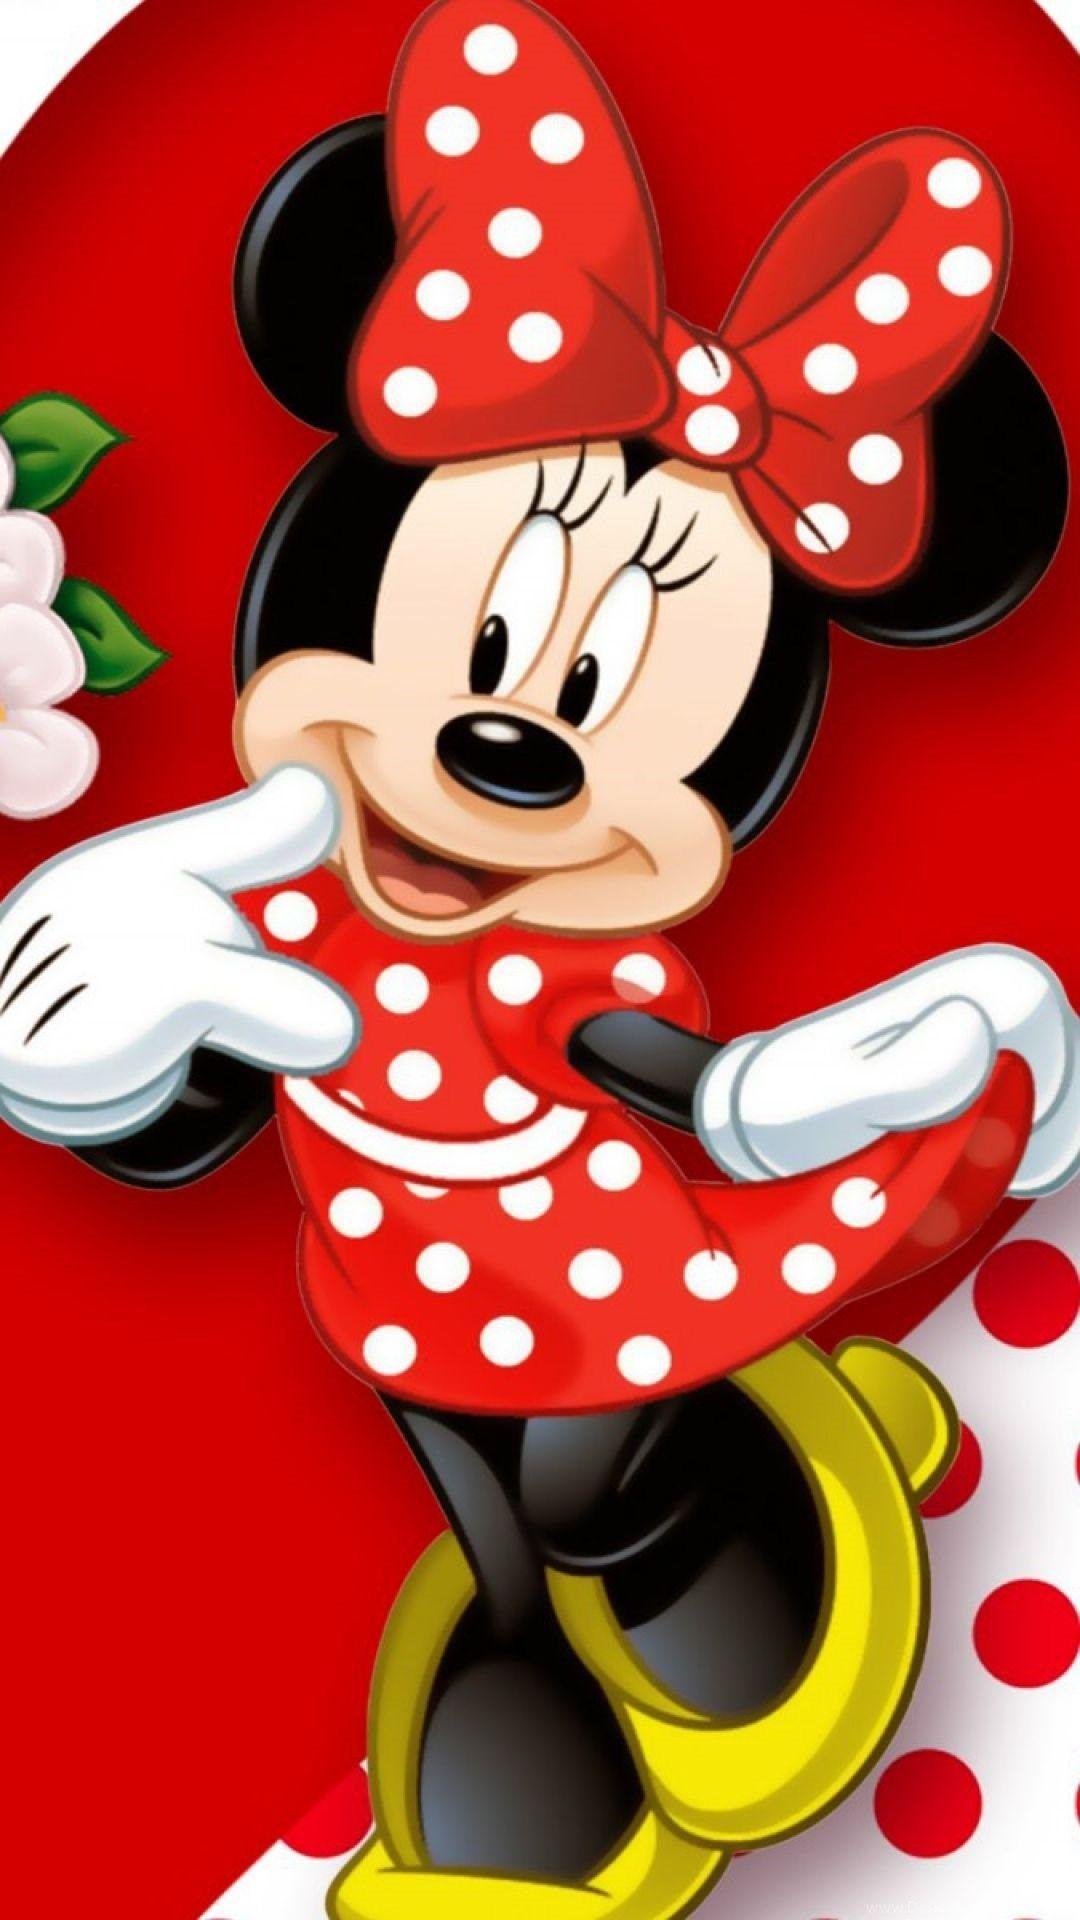 Hình nền điện thoại Android 1080x1920 Hình ảnh chuột Mickey.  Hình nền 3D.  Hình chuột mickey, phim hoạt hình chuột Minnie, hình chuột Minnie